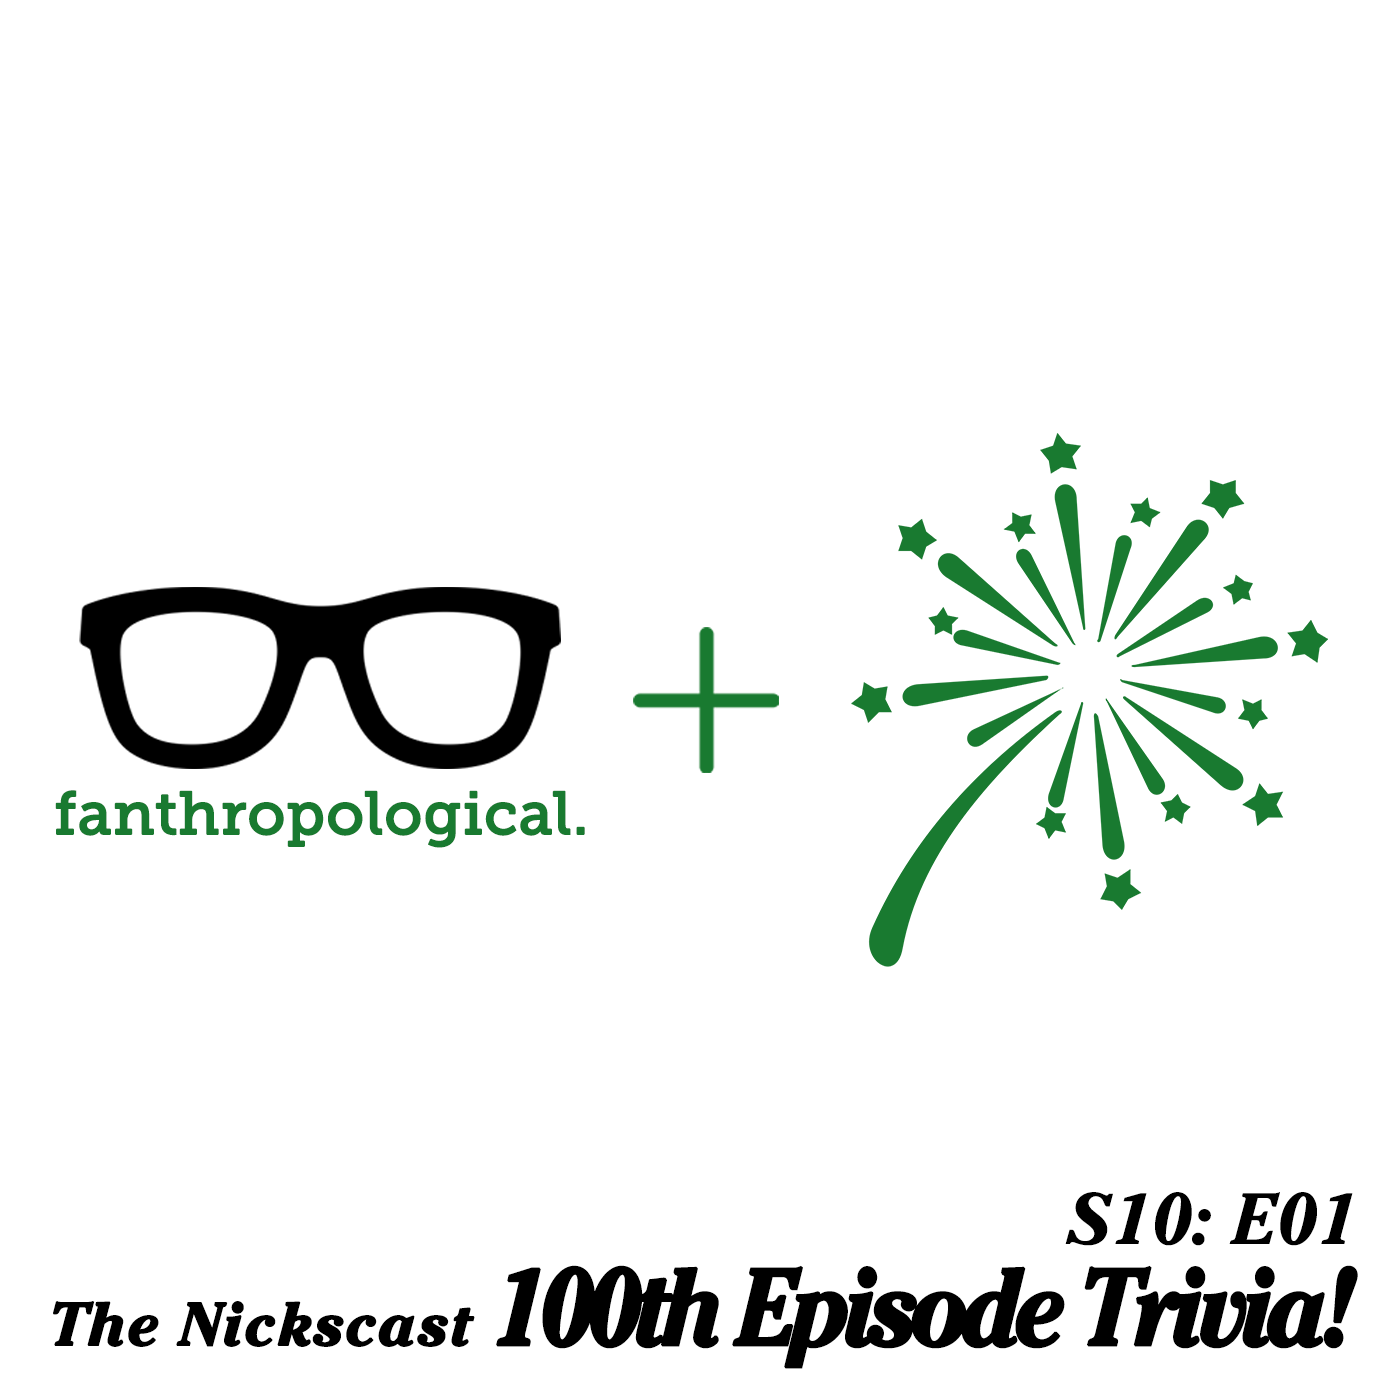 Fanthropological - Episode 100 Spectacular